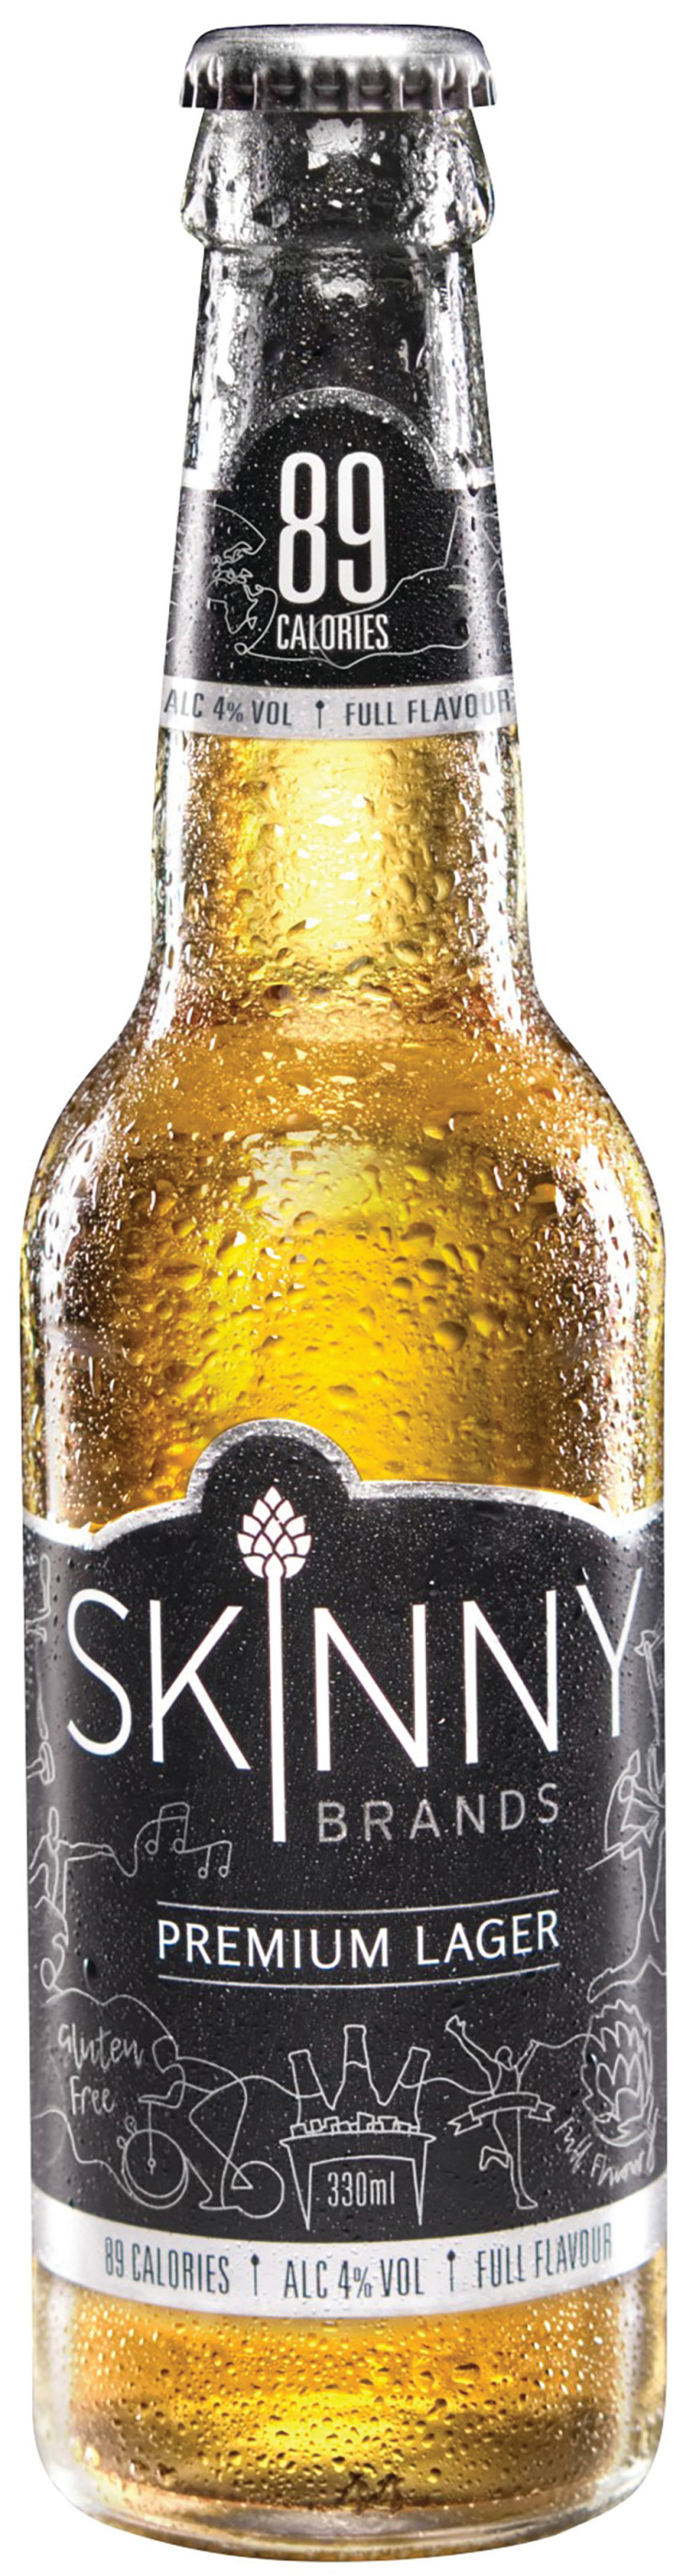 בירה סקיני פרימיום לאגר (צילום: איטליאנו )